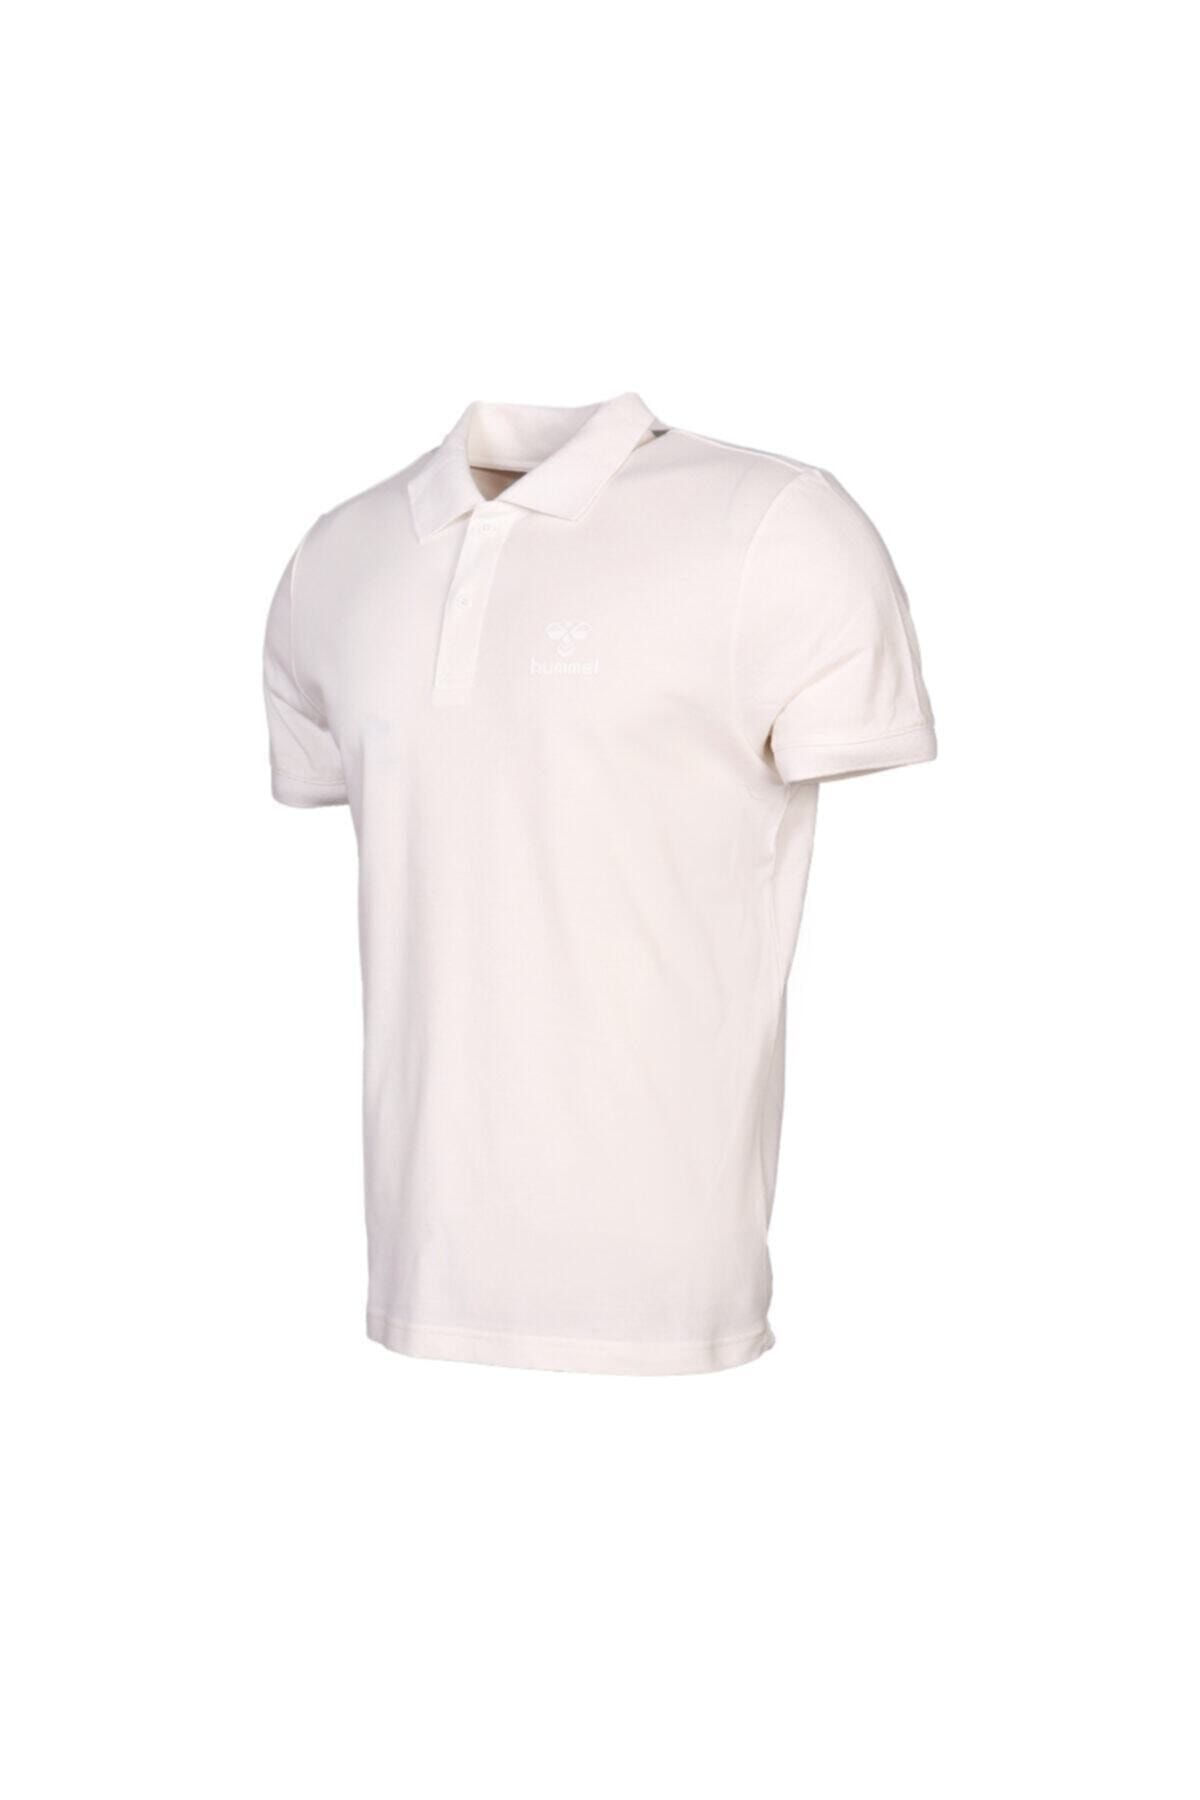 تی شرت پولو آستین کوتاه لنارد سفید هومل Hummel (برند دانمارک)